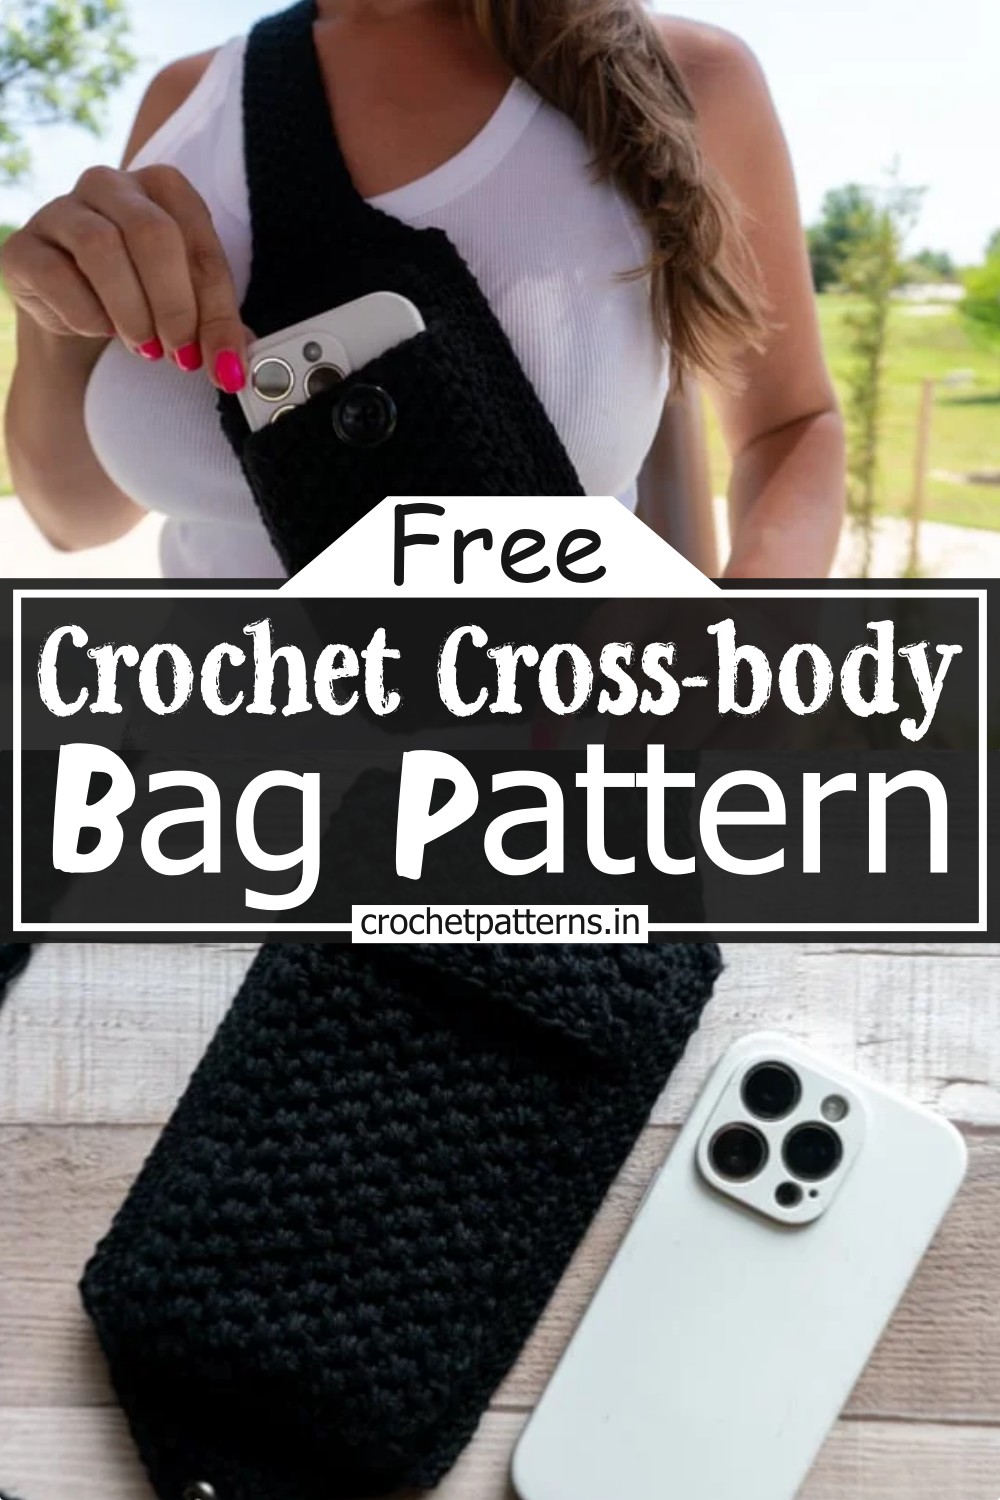 Crochet Cross-body Bag Pattern